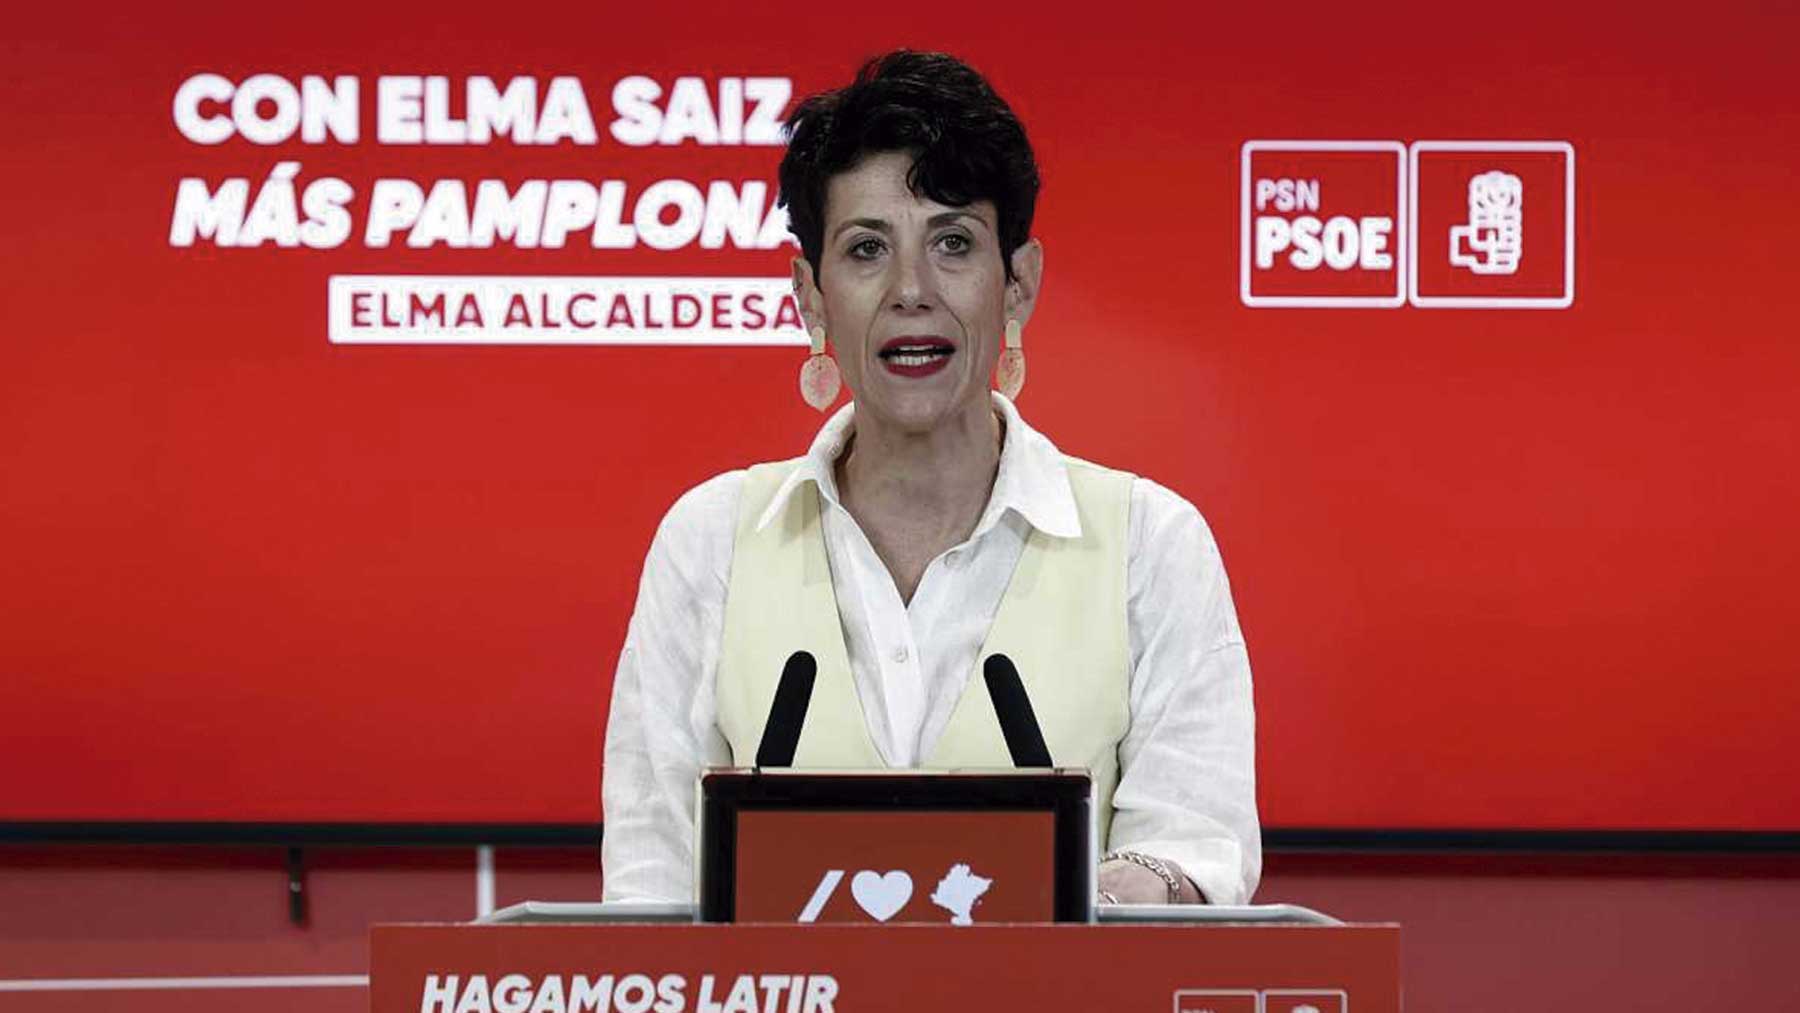 Elma Saiz, ex candidata del PSOE en Navarra